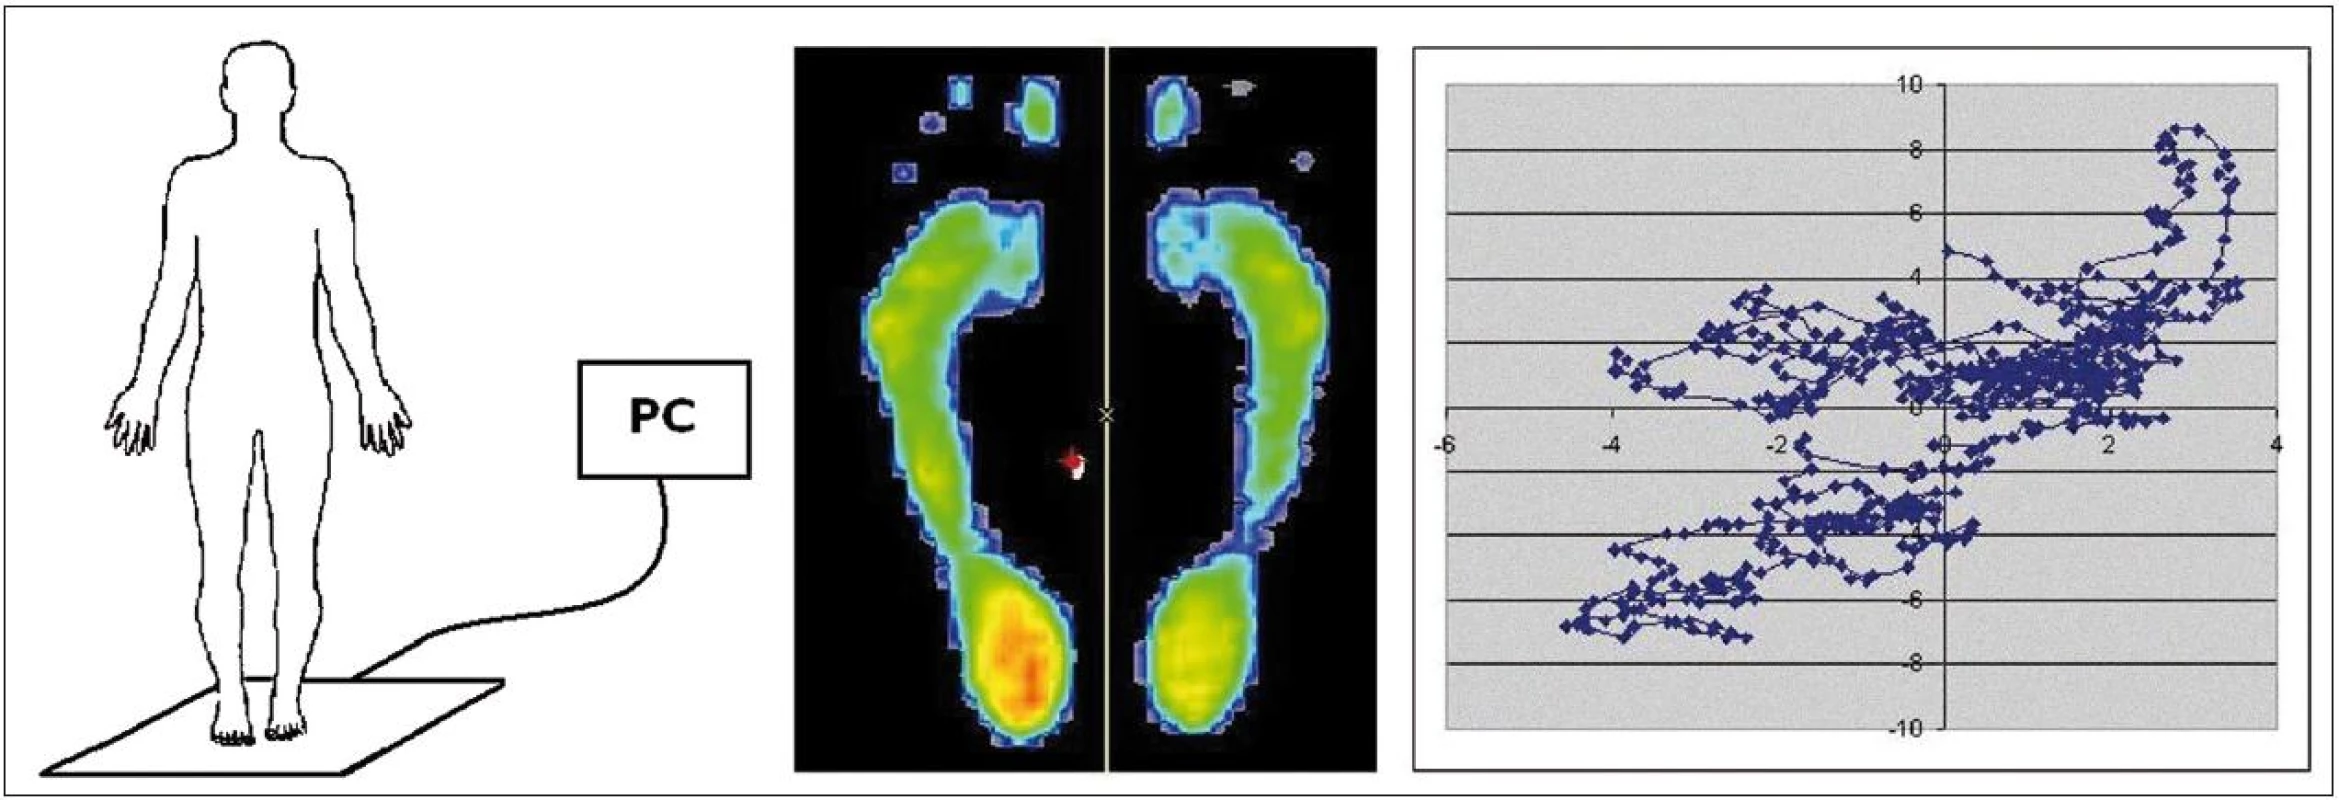 Schéma použití posturografické desky FootScan včetně projekce zátěže chodidel a zobrazení změn průmětu pomyslného těžiště – COP (Centre Of Pressure) do podložky v čase.